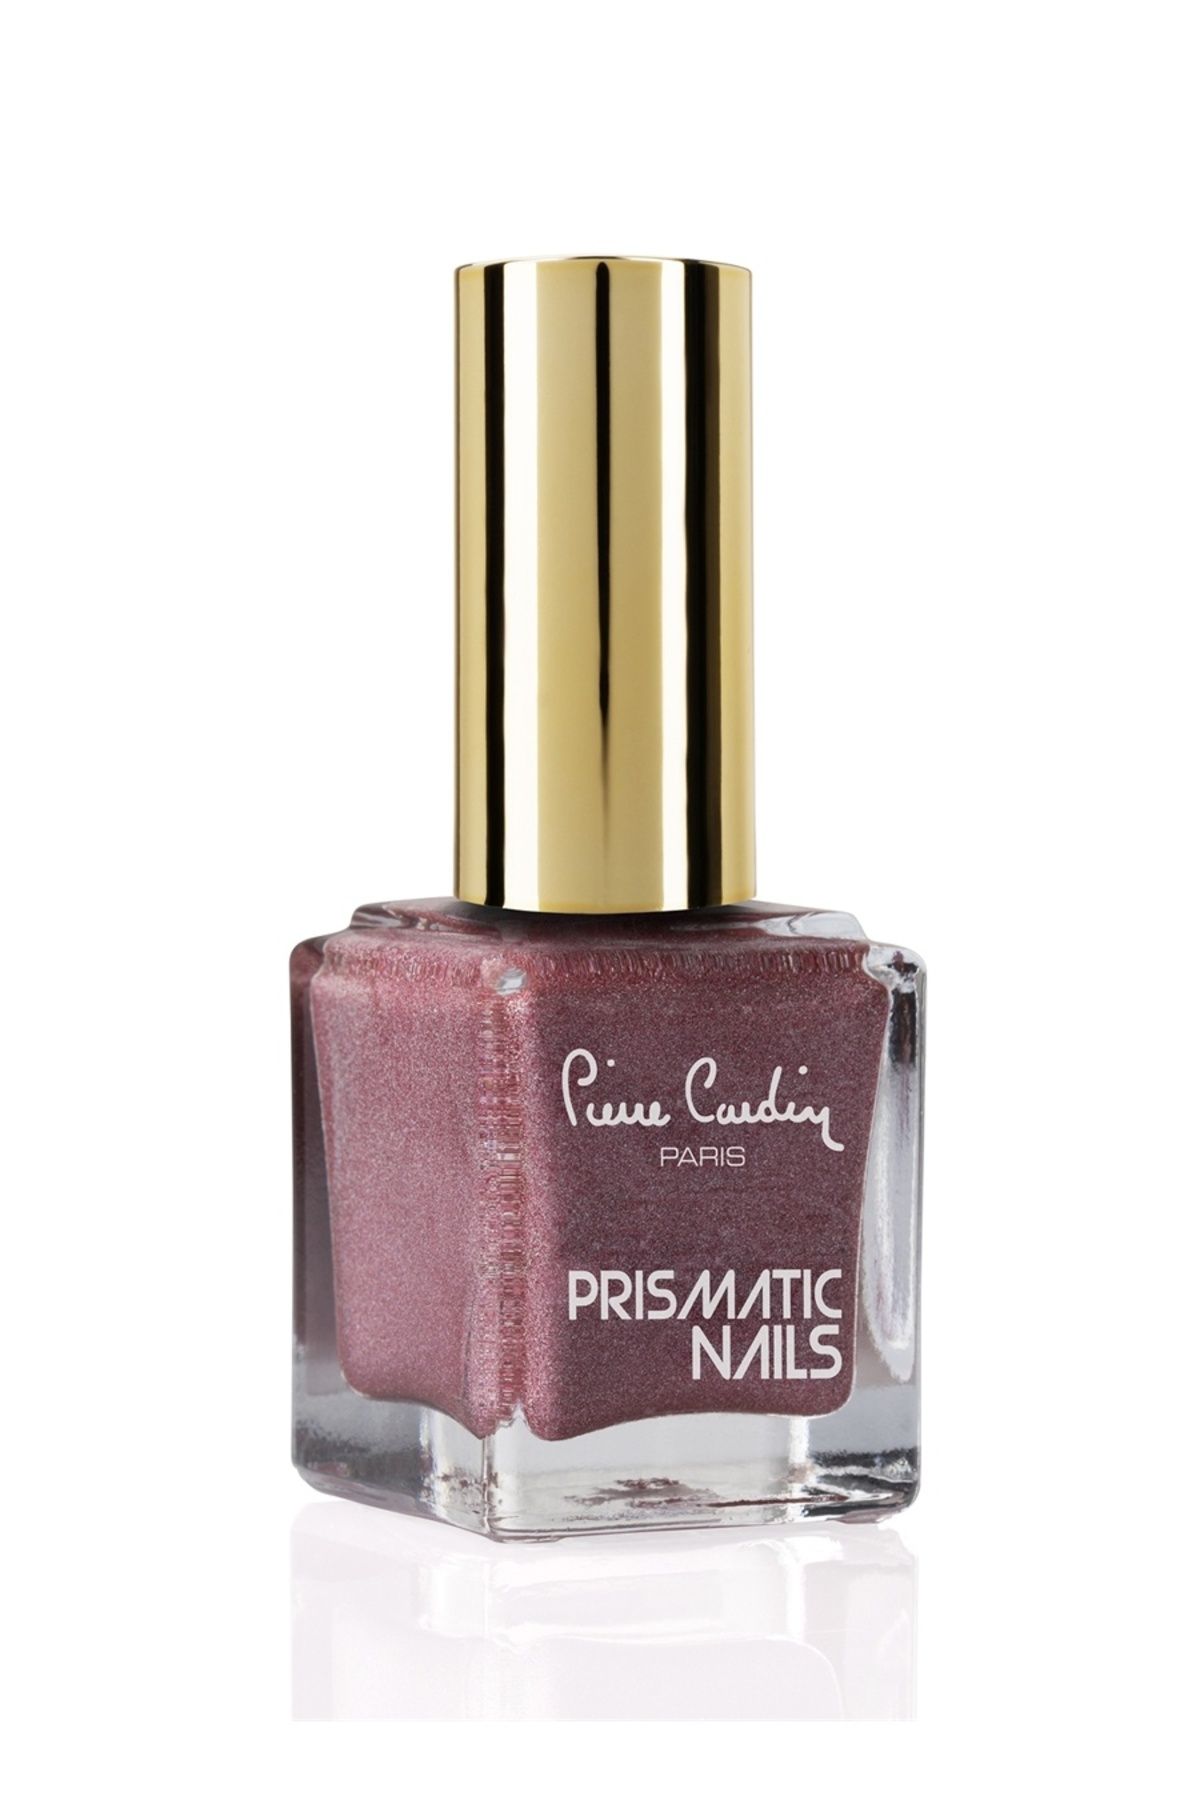 Pierre Cardin 14362 Prismatic Nails Pembe Kadın Oje